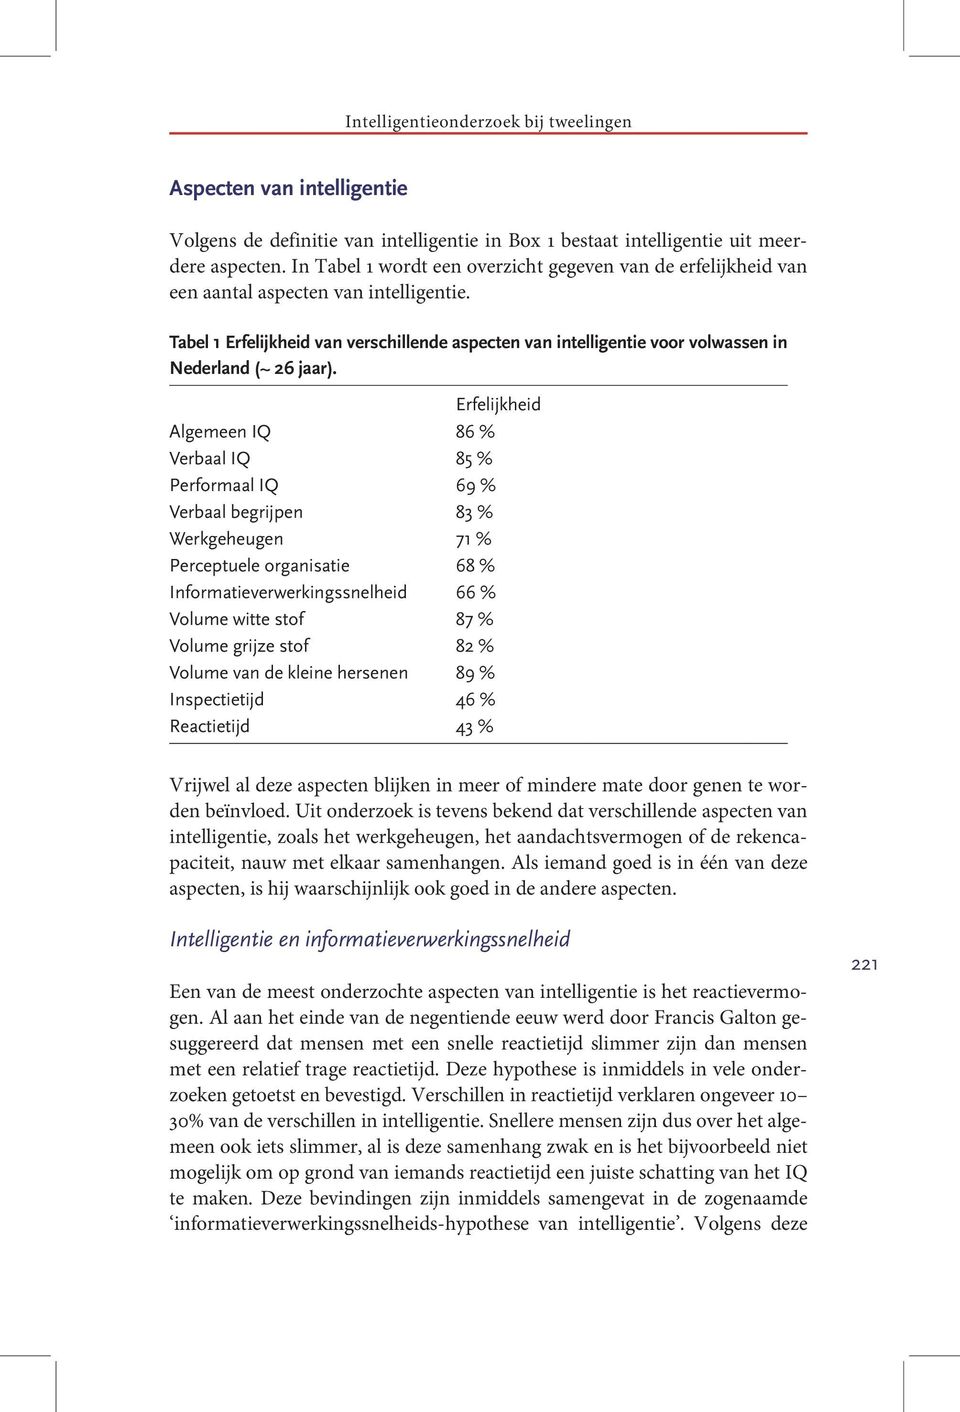 Tabel 1 Erfelijkheid van verschillende aspecten van intelligentie voor volwassen in Nederland (~ 26 jaar).